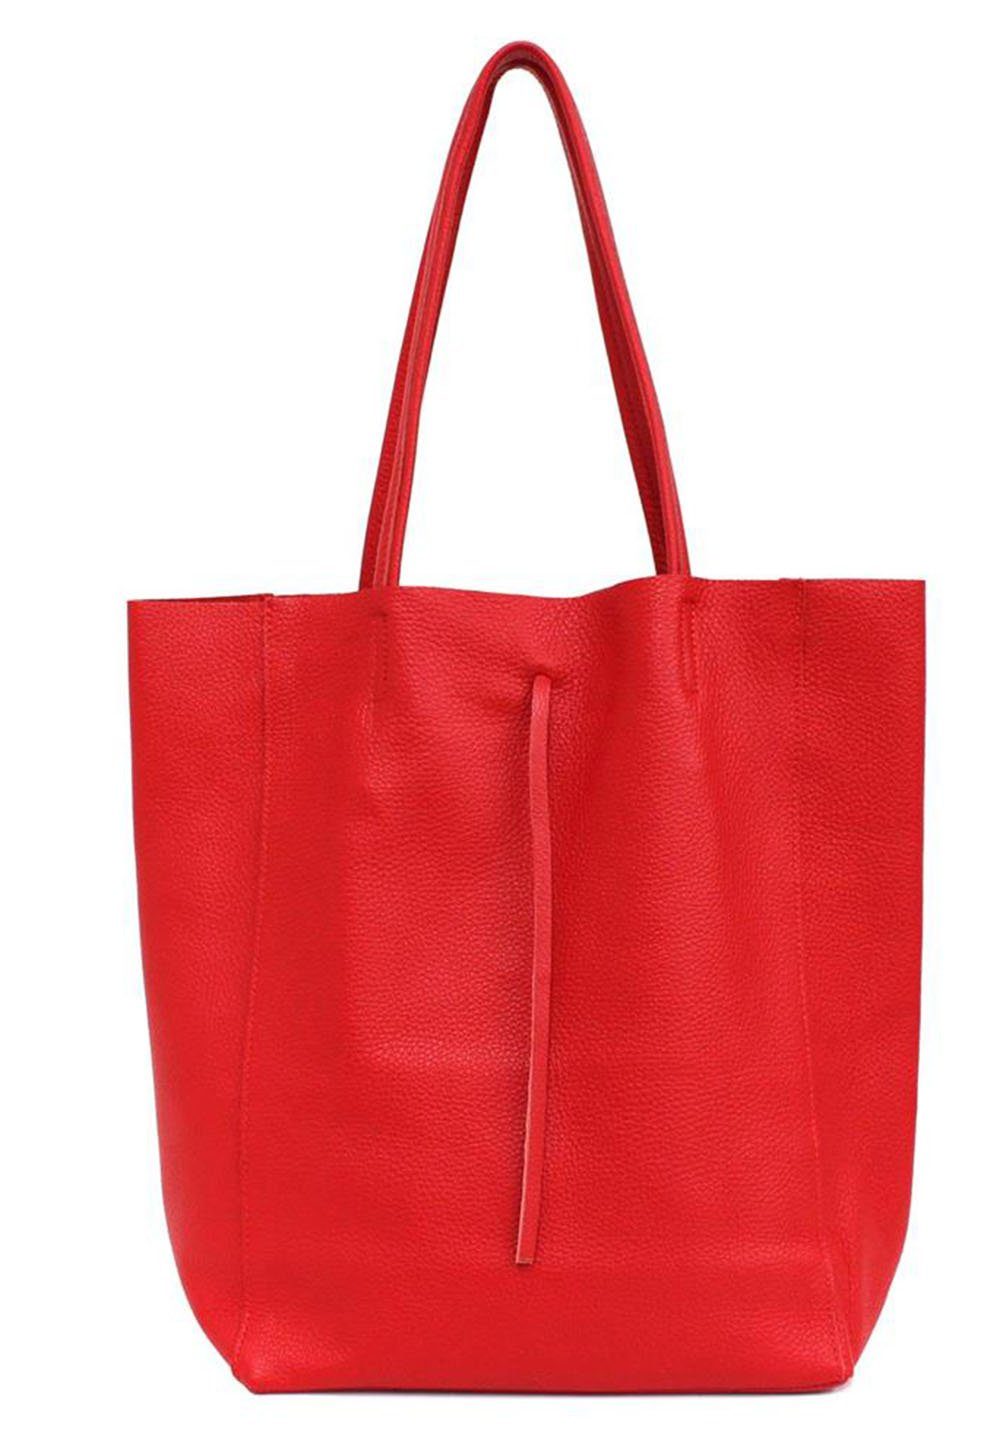 PRINIDOR Shopper Shopper Italy rot Leder, echt Ledertasche in Made Echtleder